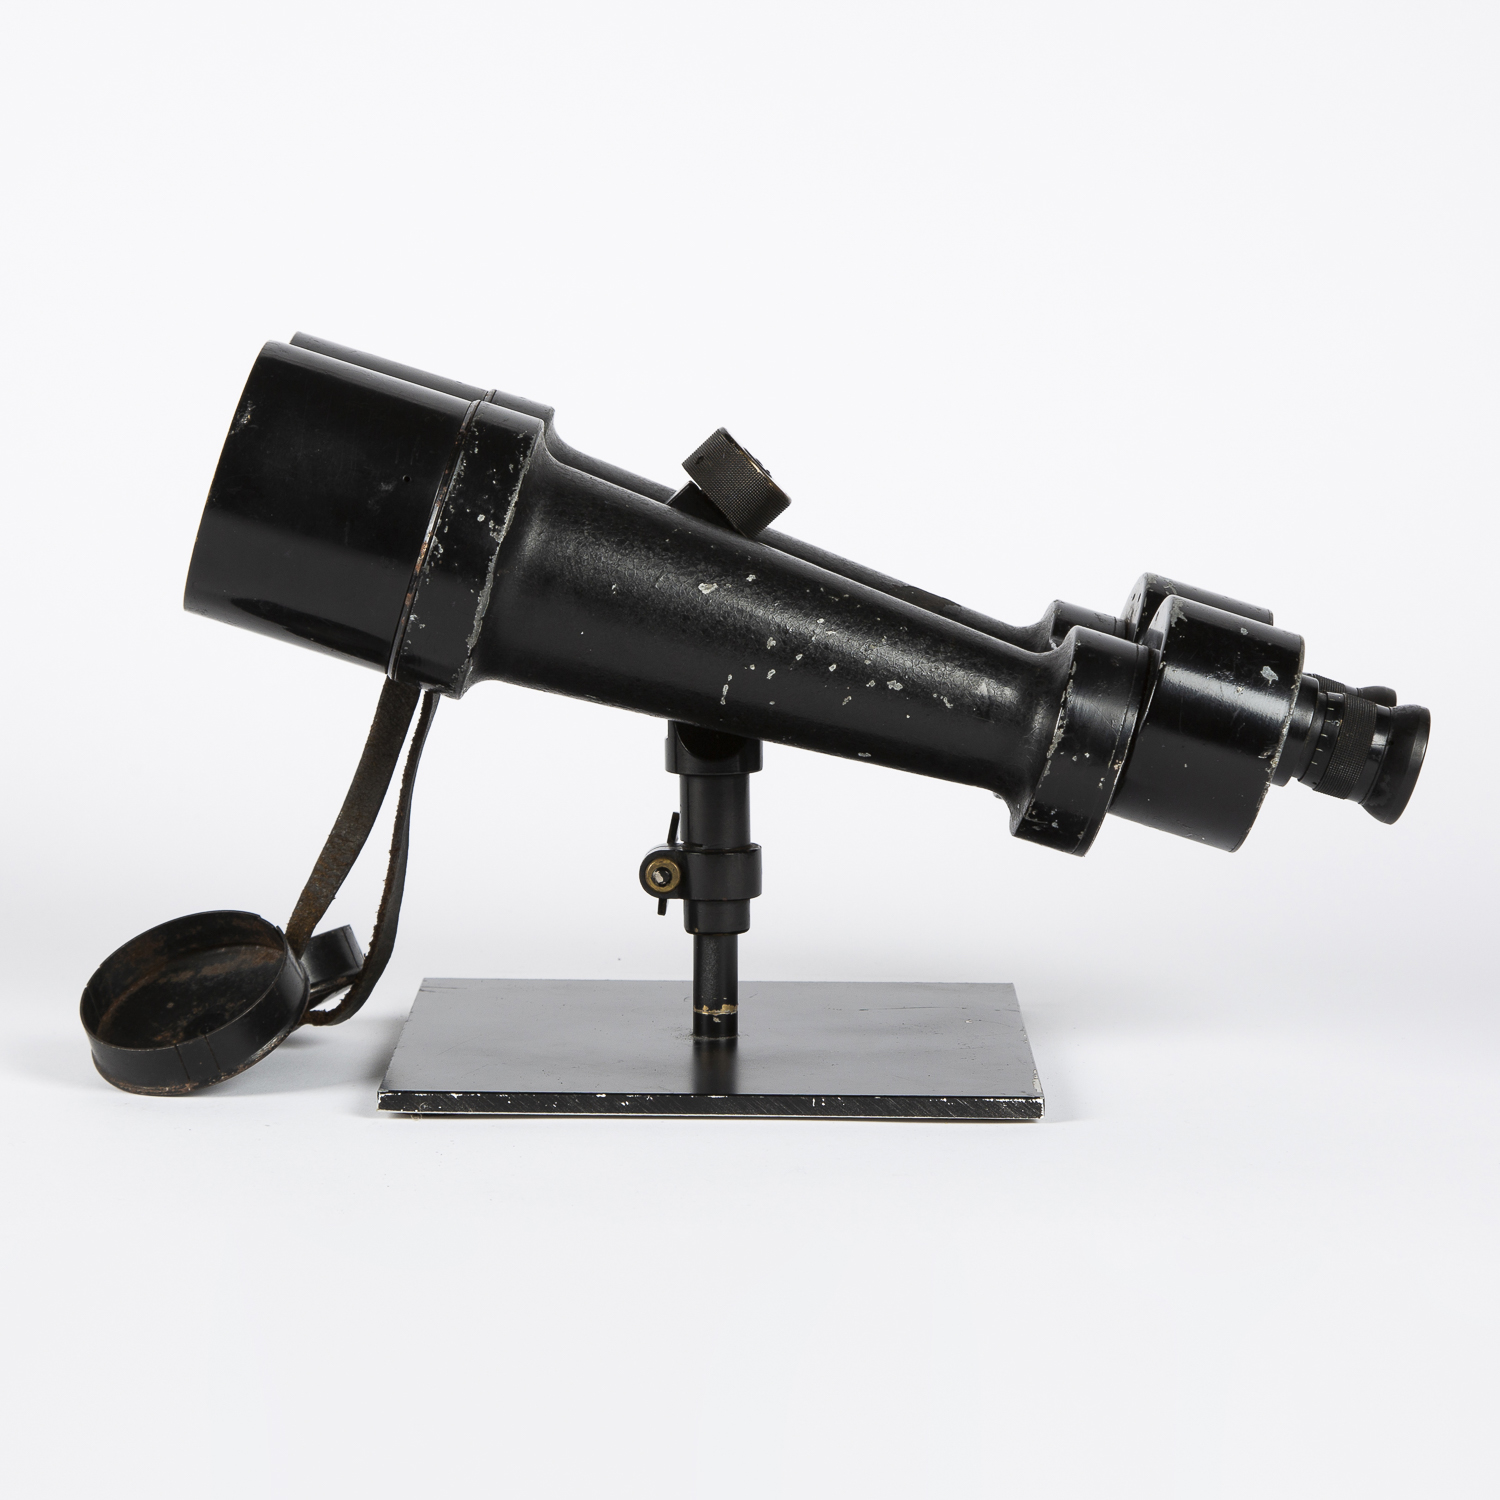 15 x 60 binoculars by Carl Zeiss Wien